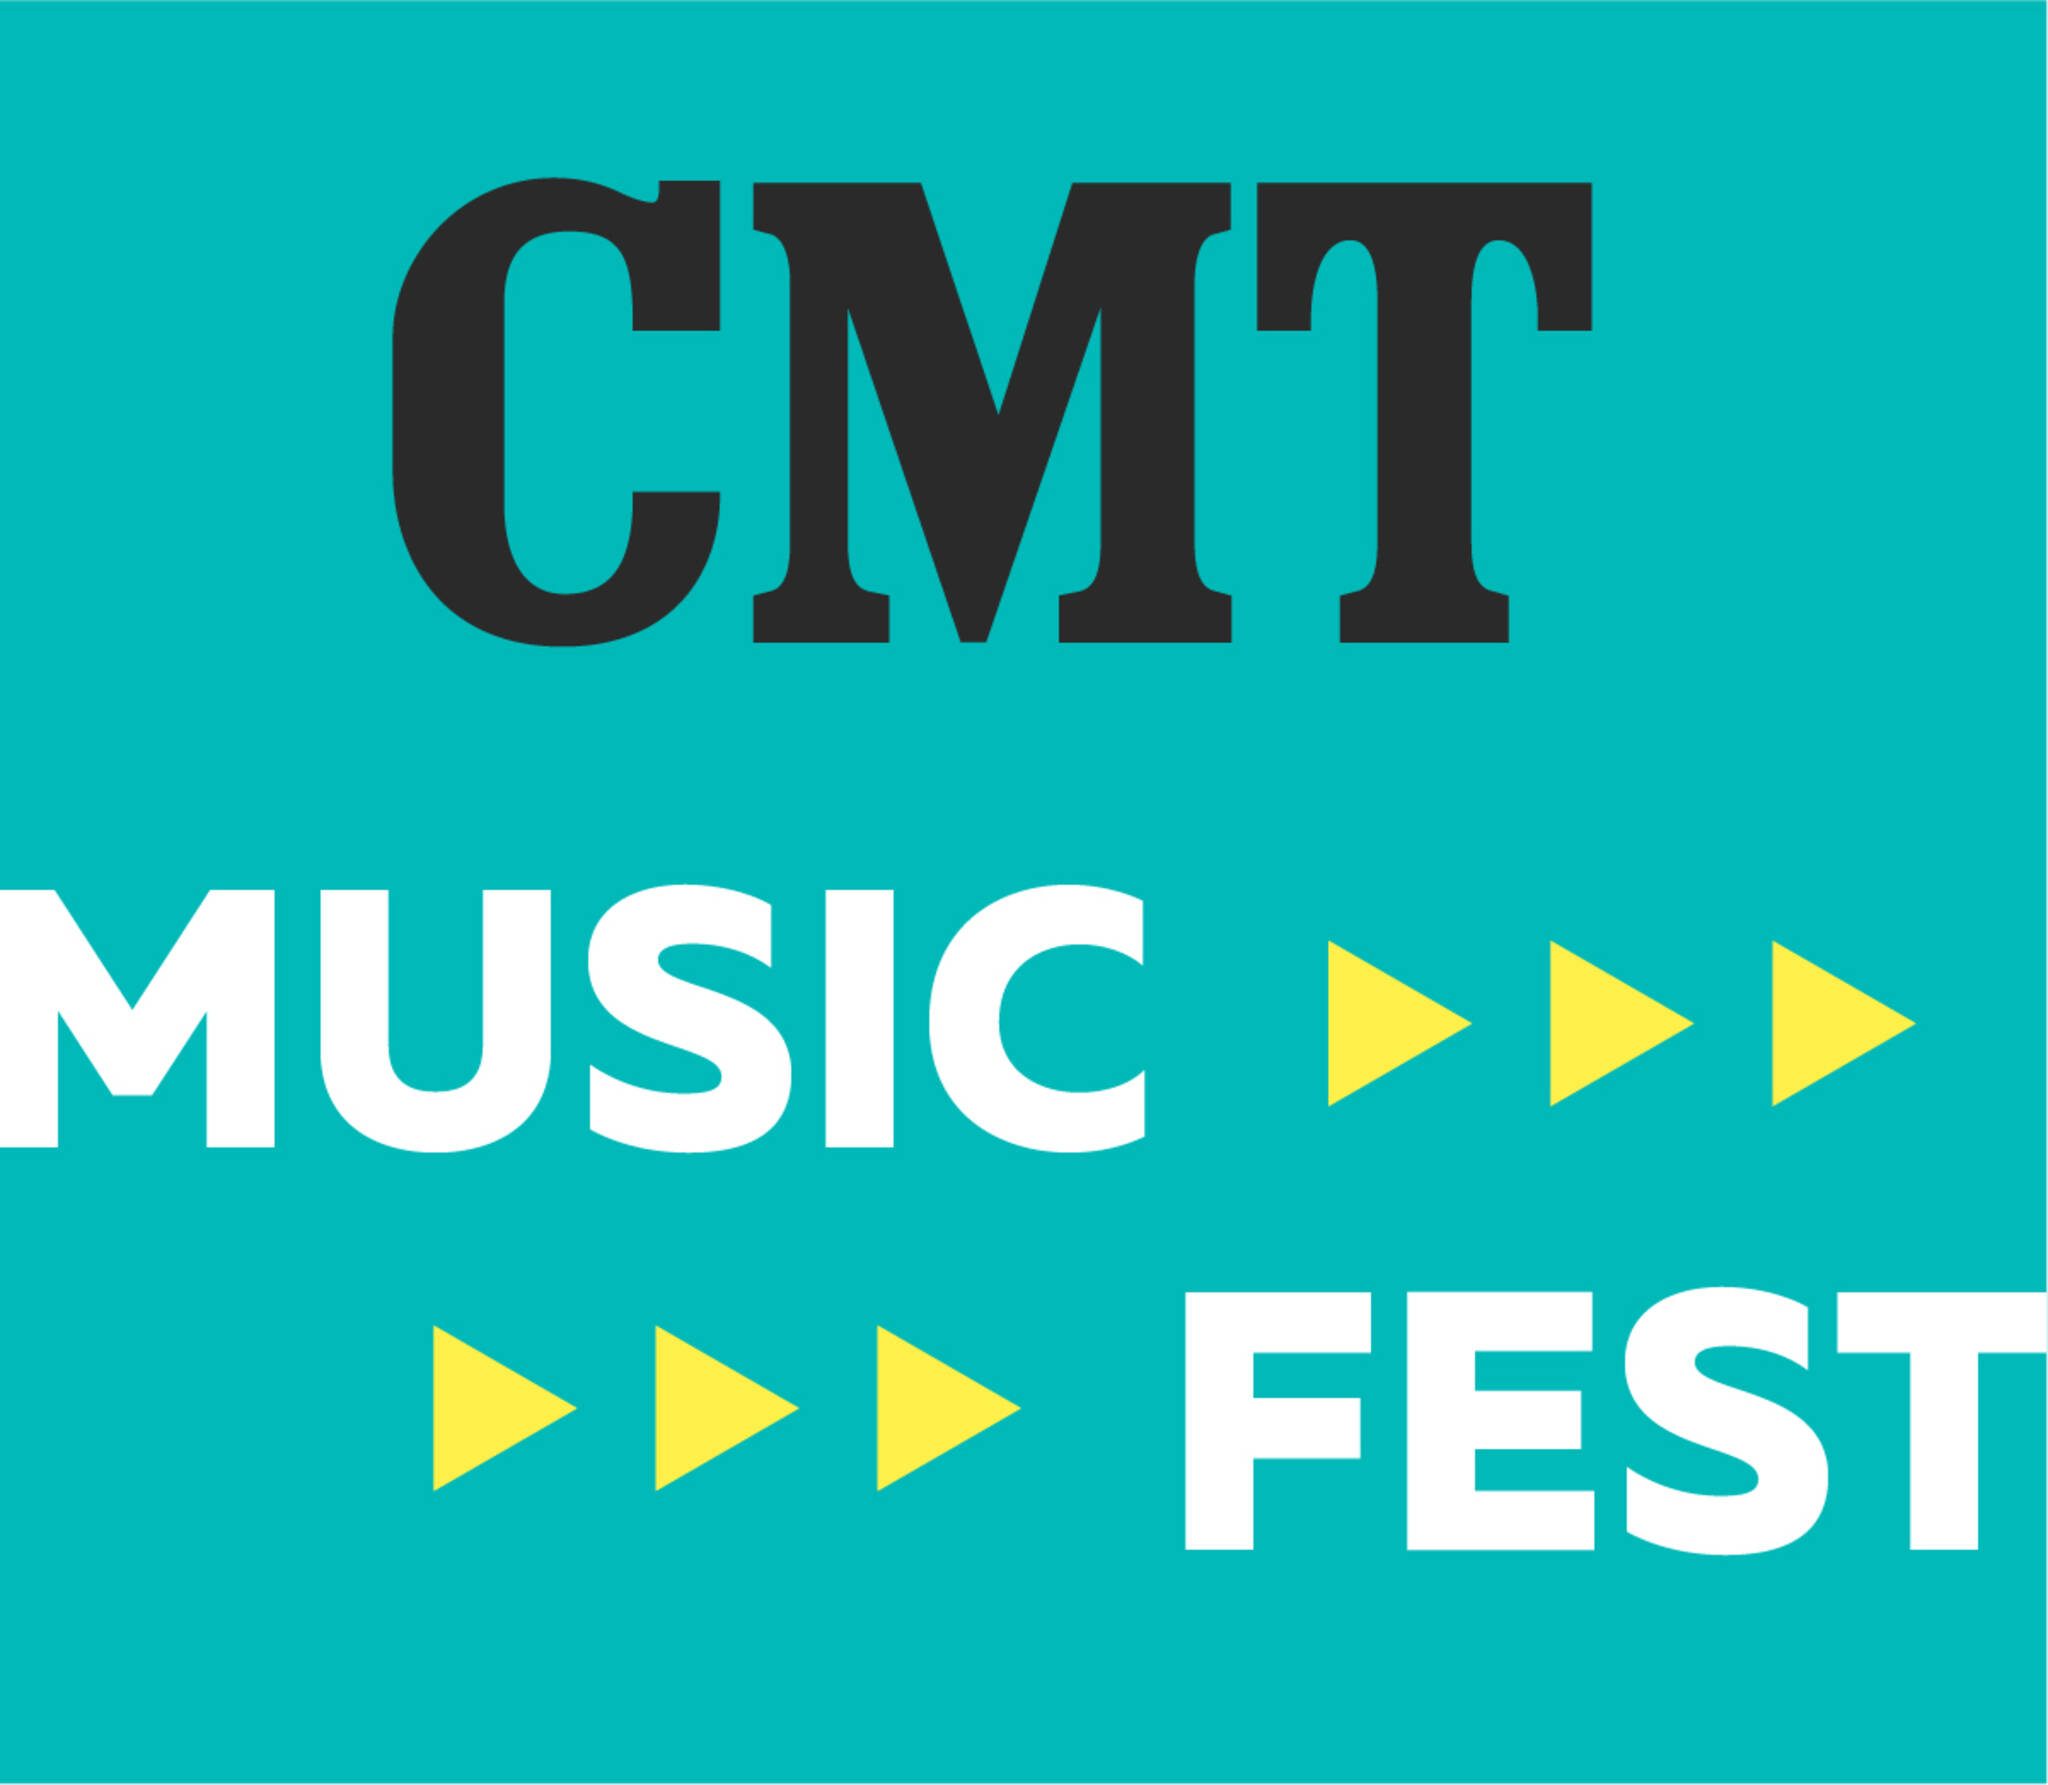 CMT Music Fest